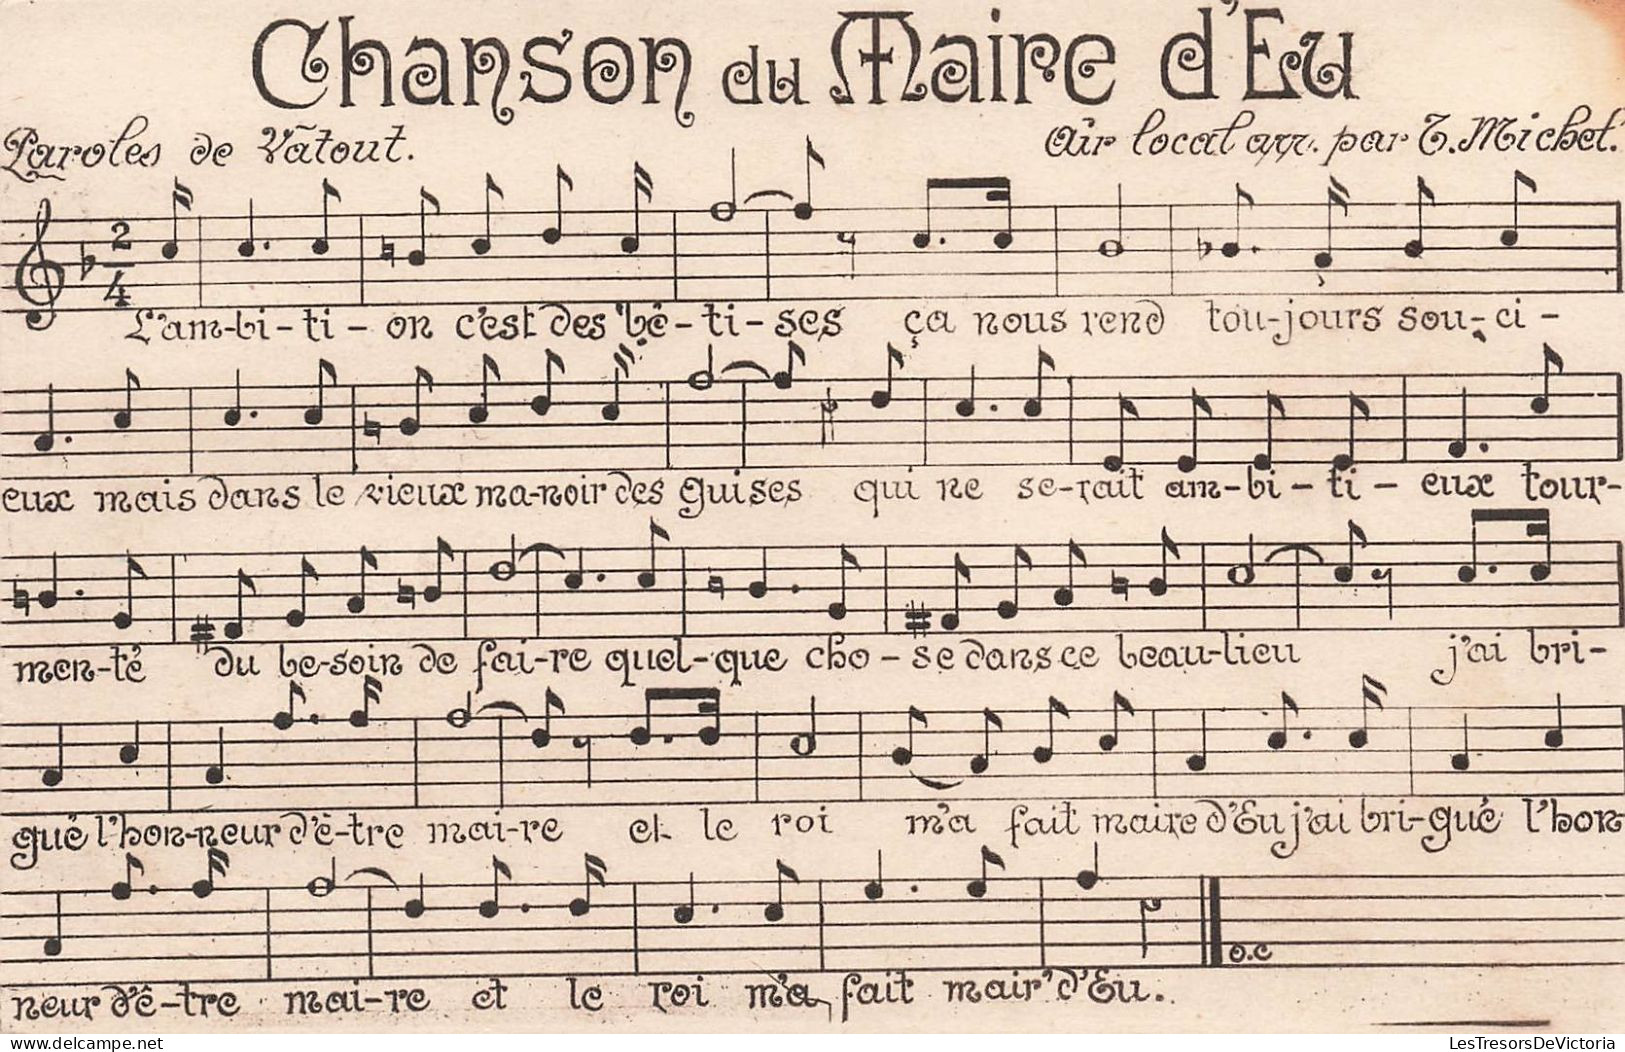 FOLKLORES - Musique - Chanson Du Maire D'Eu - Carte Postale Ancienne - Musique